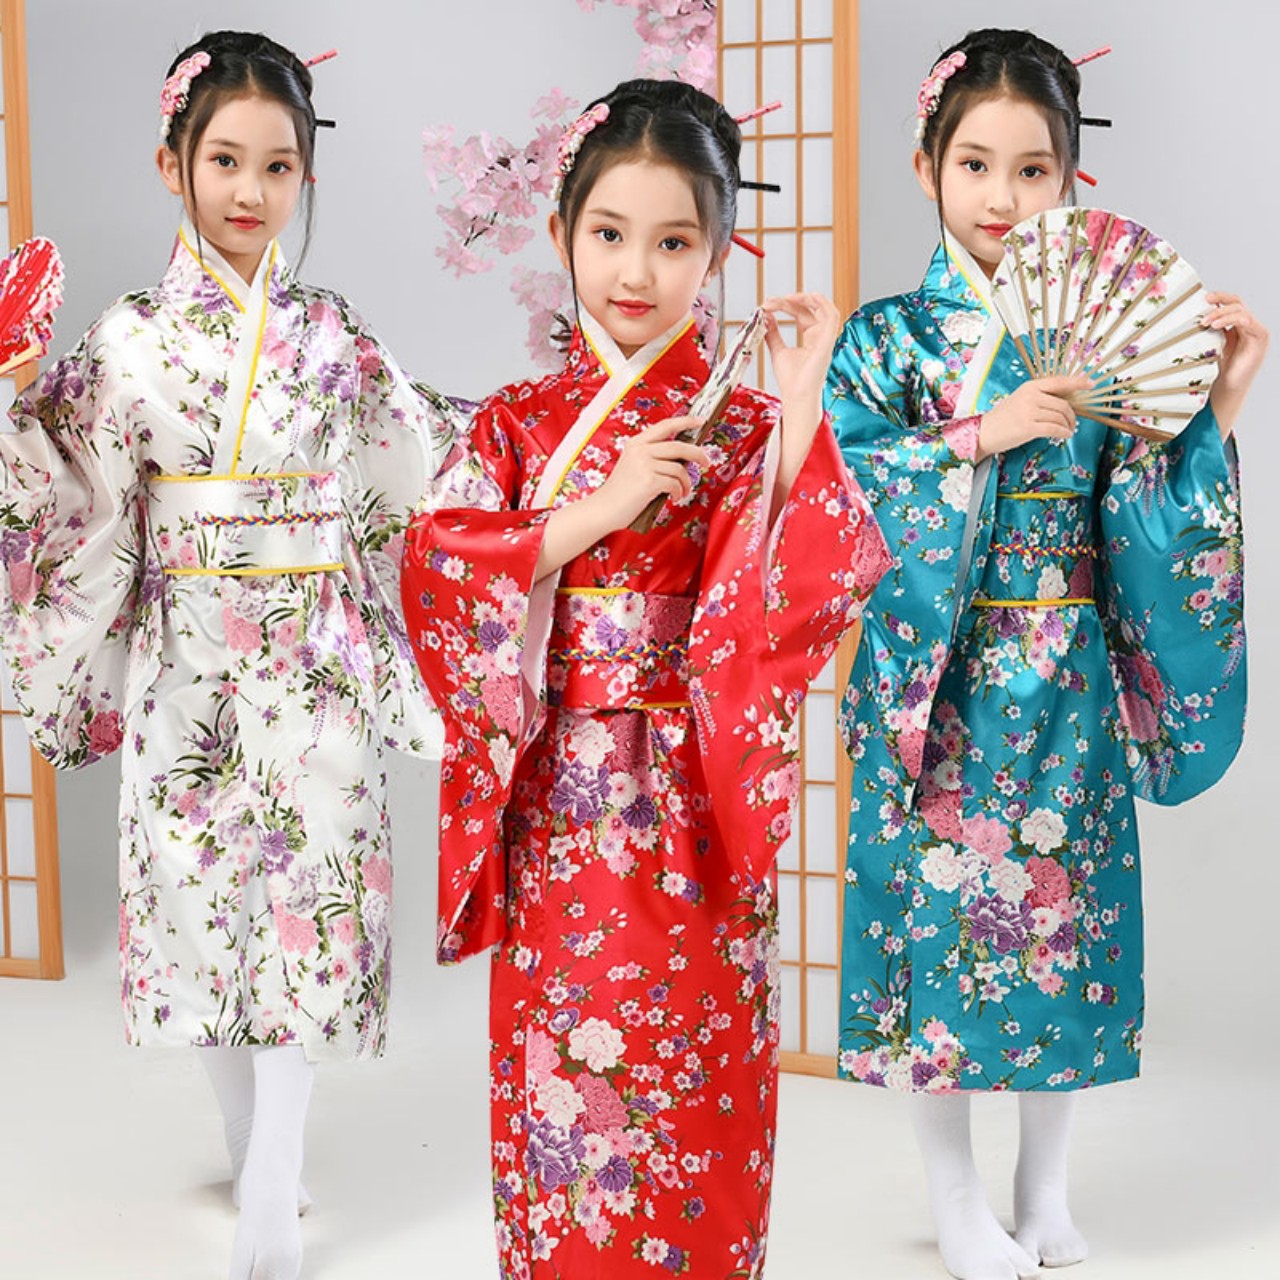 Hãy xem các em nhỏ thật dễ thương khi mặc trang phục kimono truyền thống của Nhật Bản! Đầy màu sắc và họa tiết độc đáo giúp các em tỏa sáng, tự tin hơn. Cùng khám phá thêm nhiều mẫu trang phục đáng yêu khác nhé!